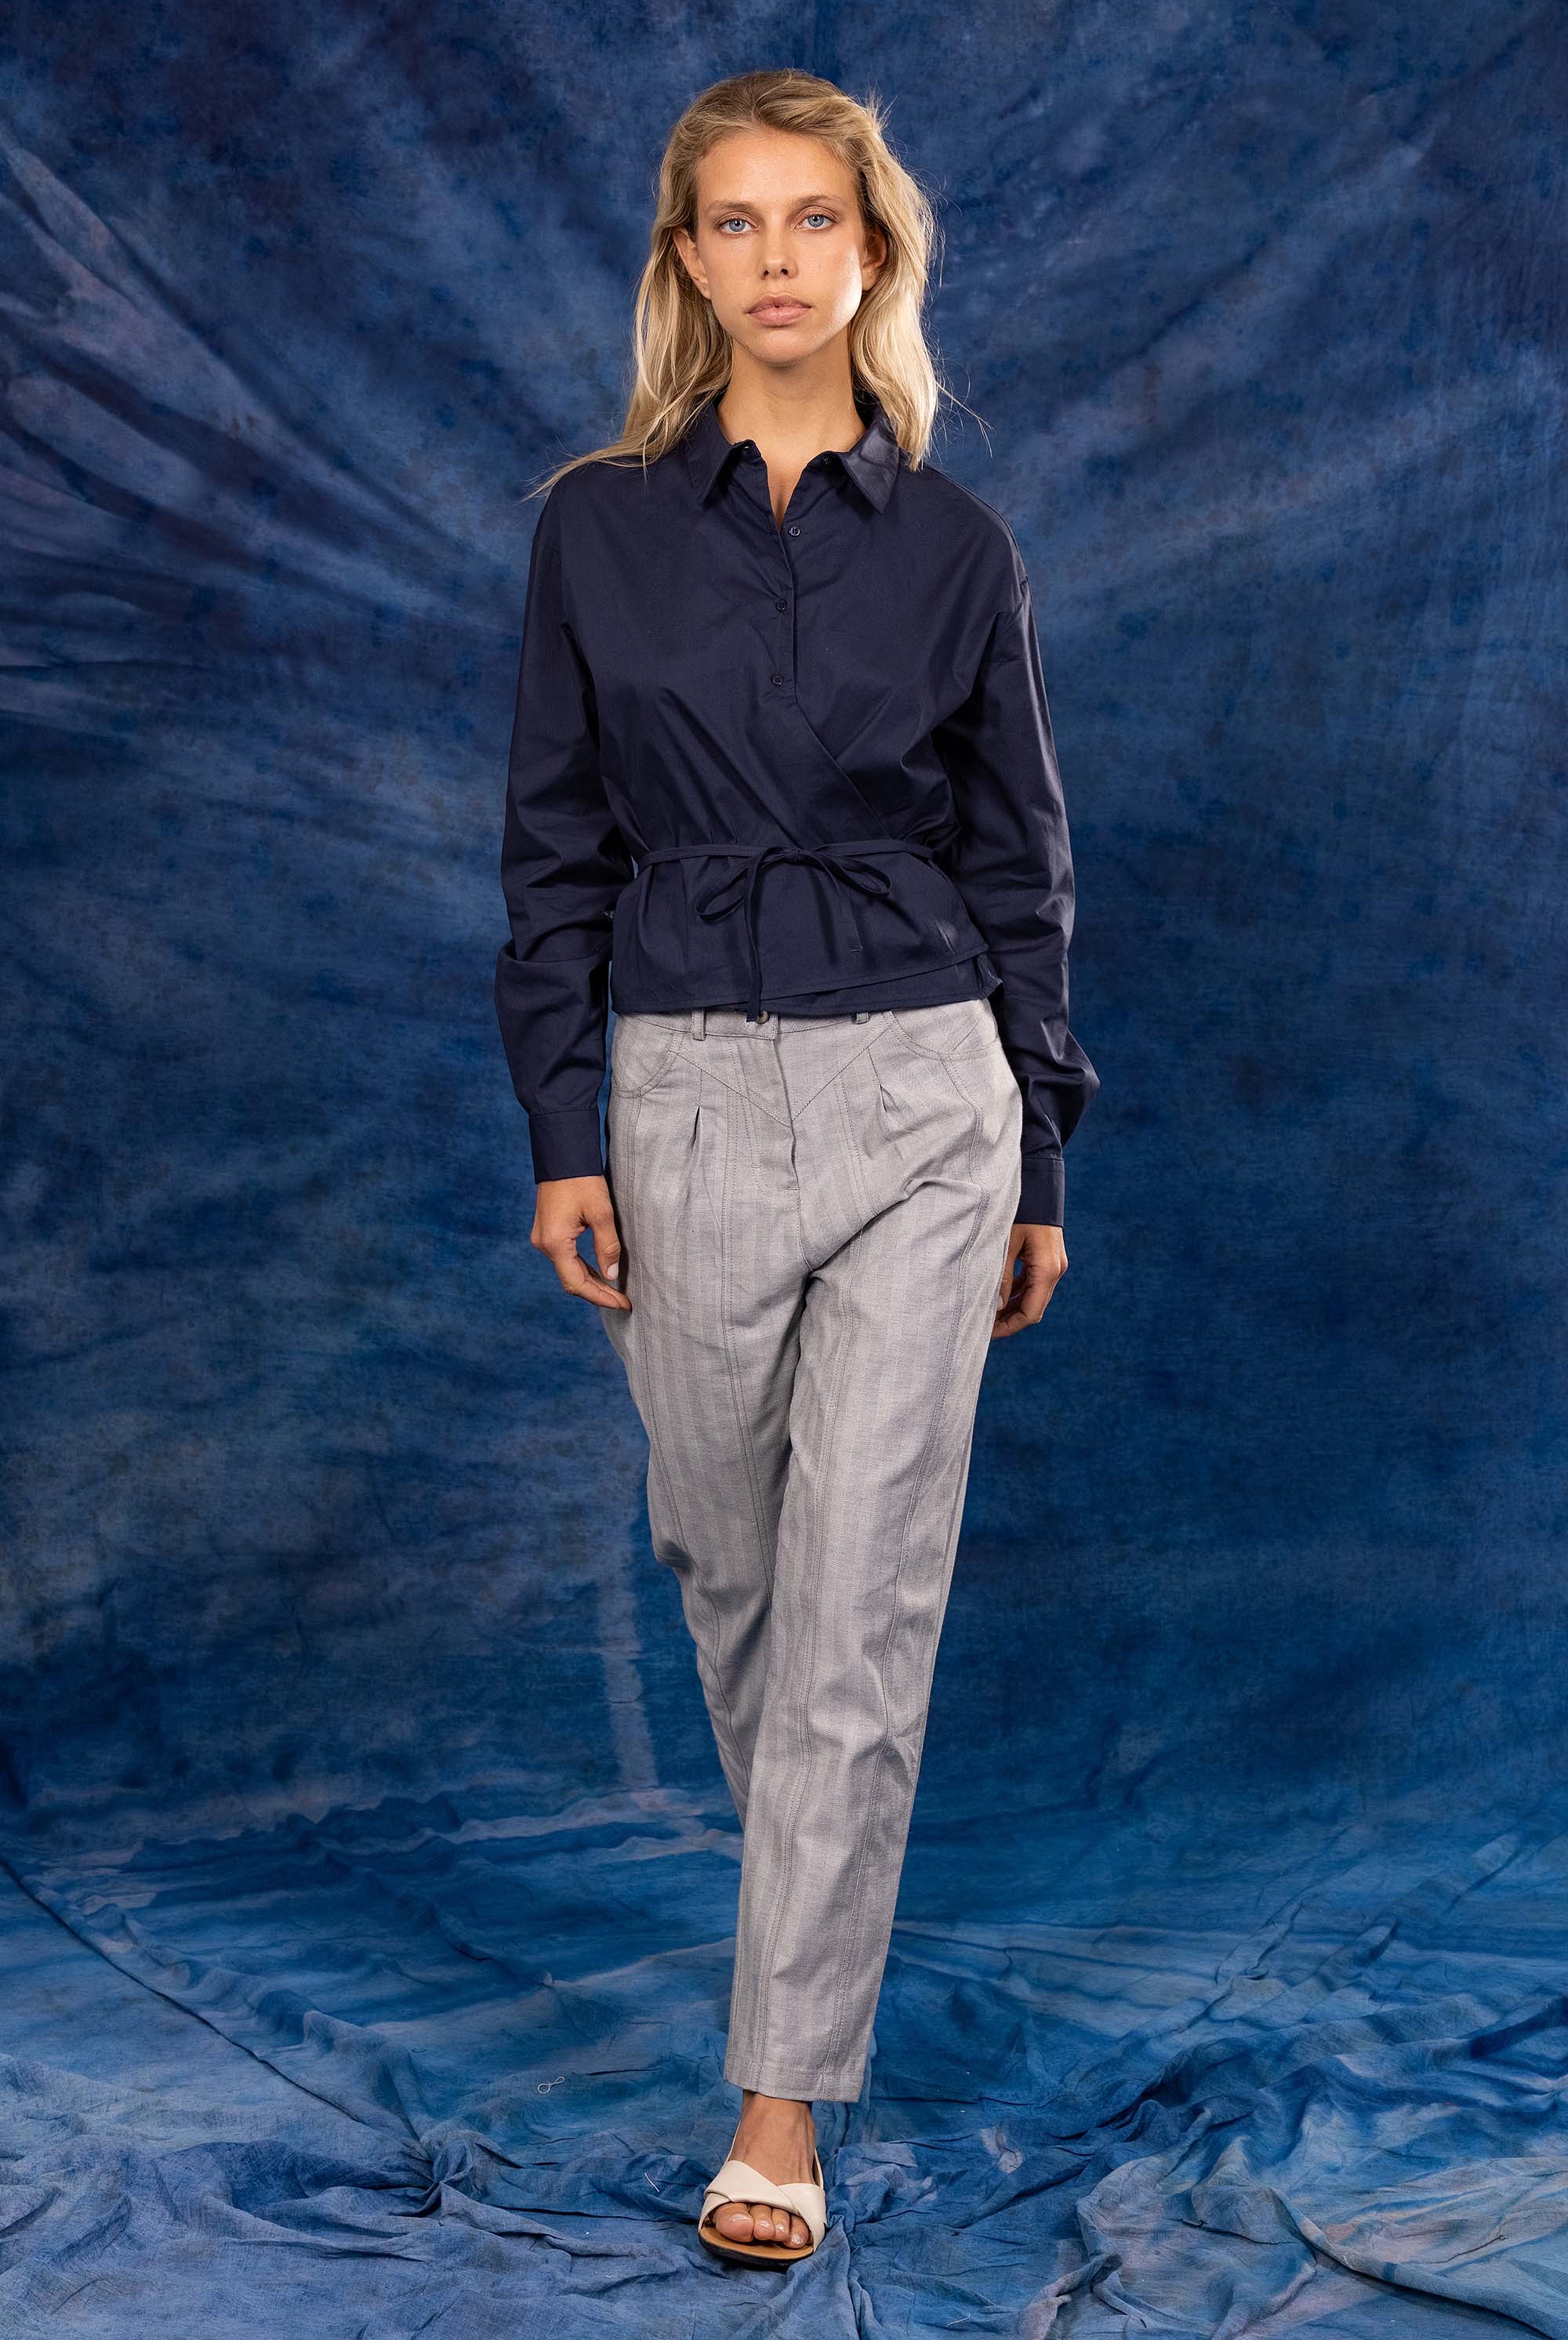 Chemise Lila Bleu Marine classique intemporelle, la chemise dessine la silhouette